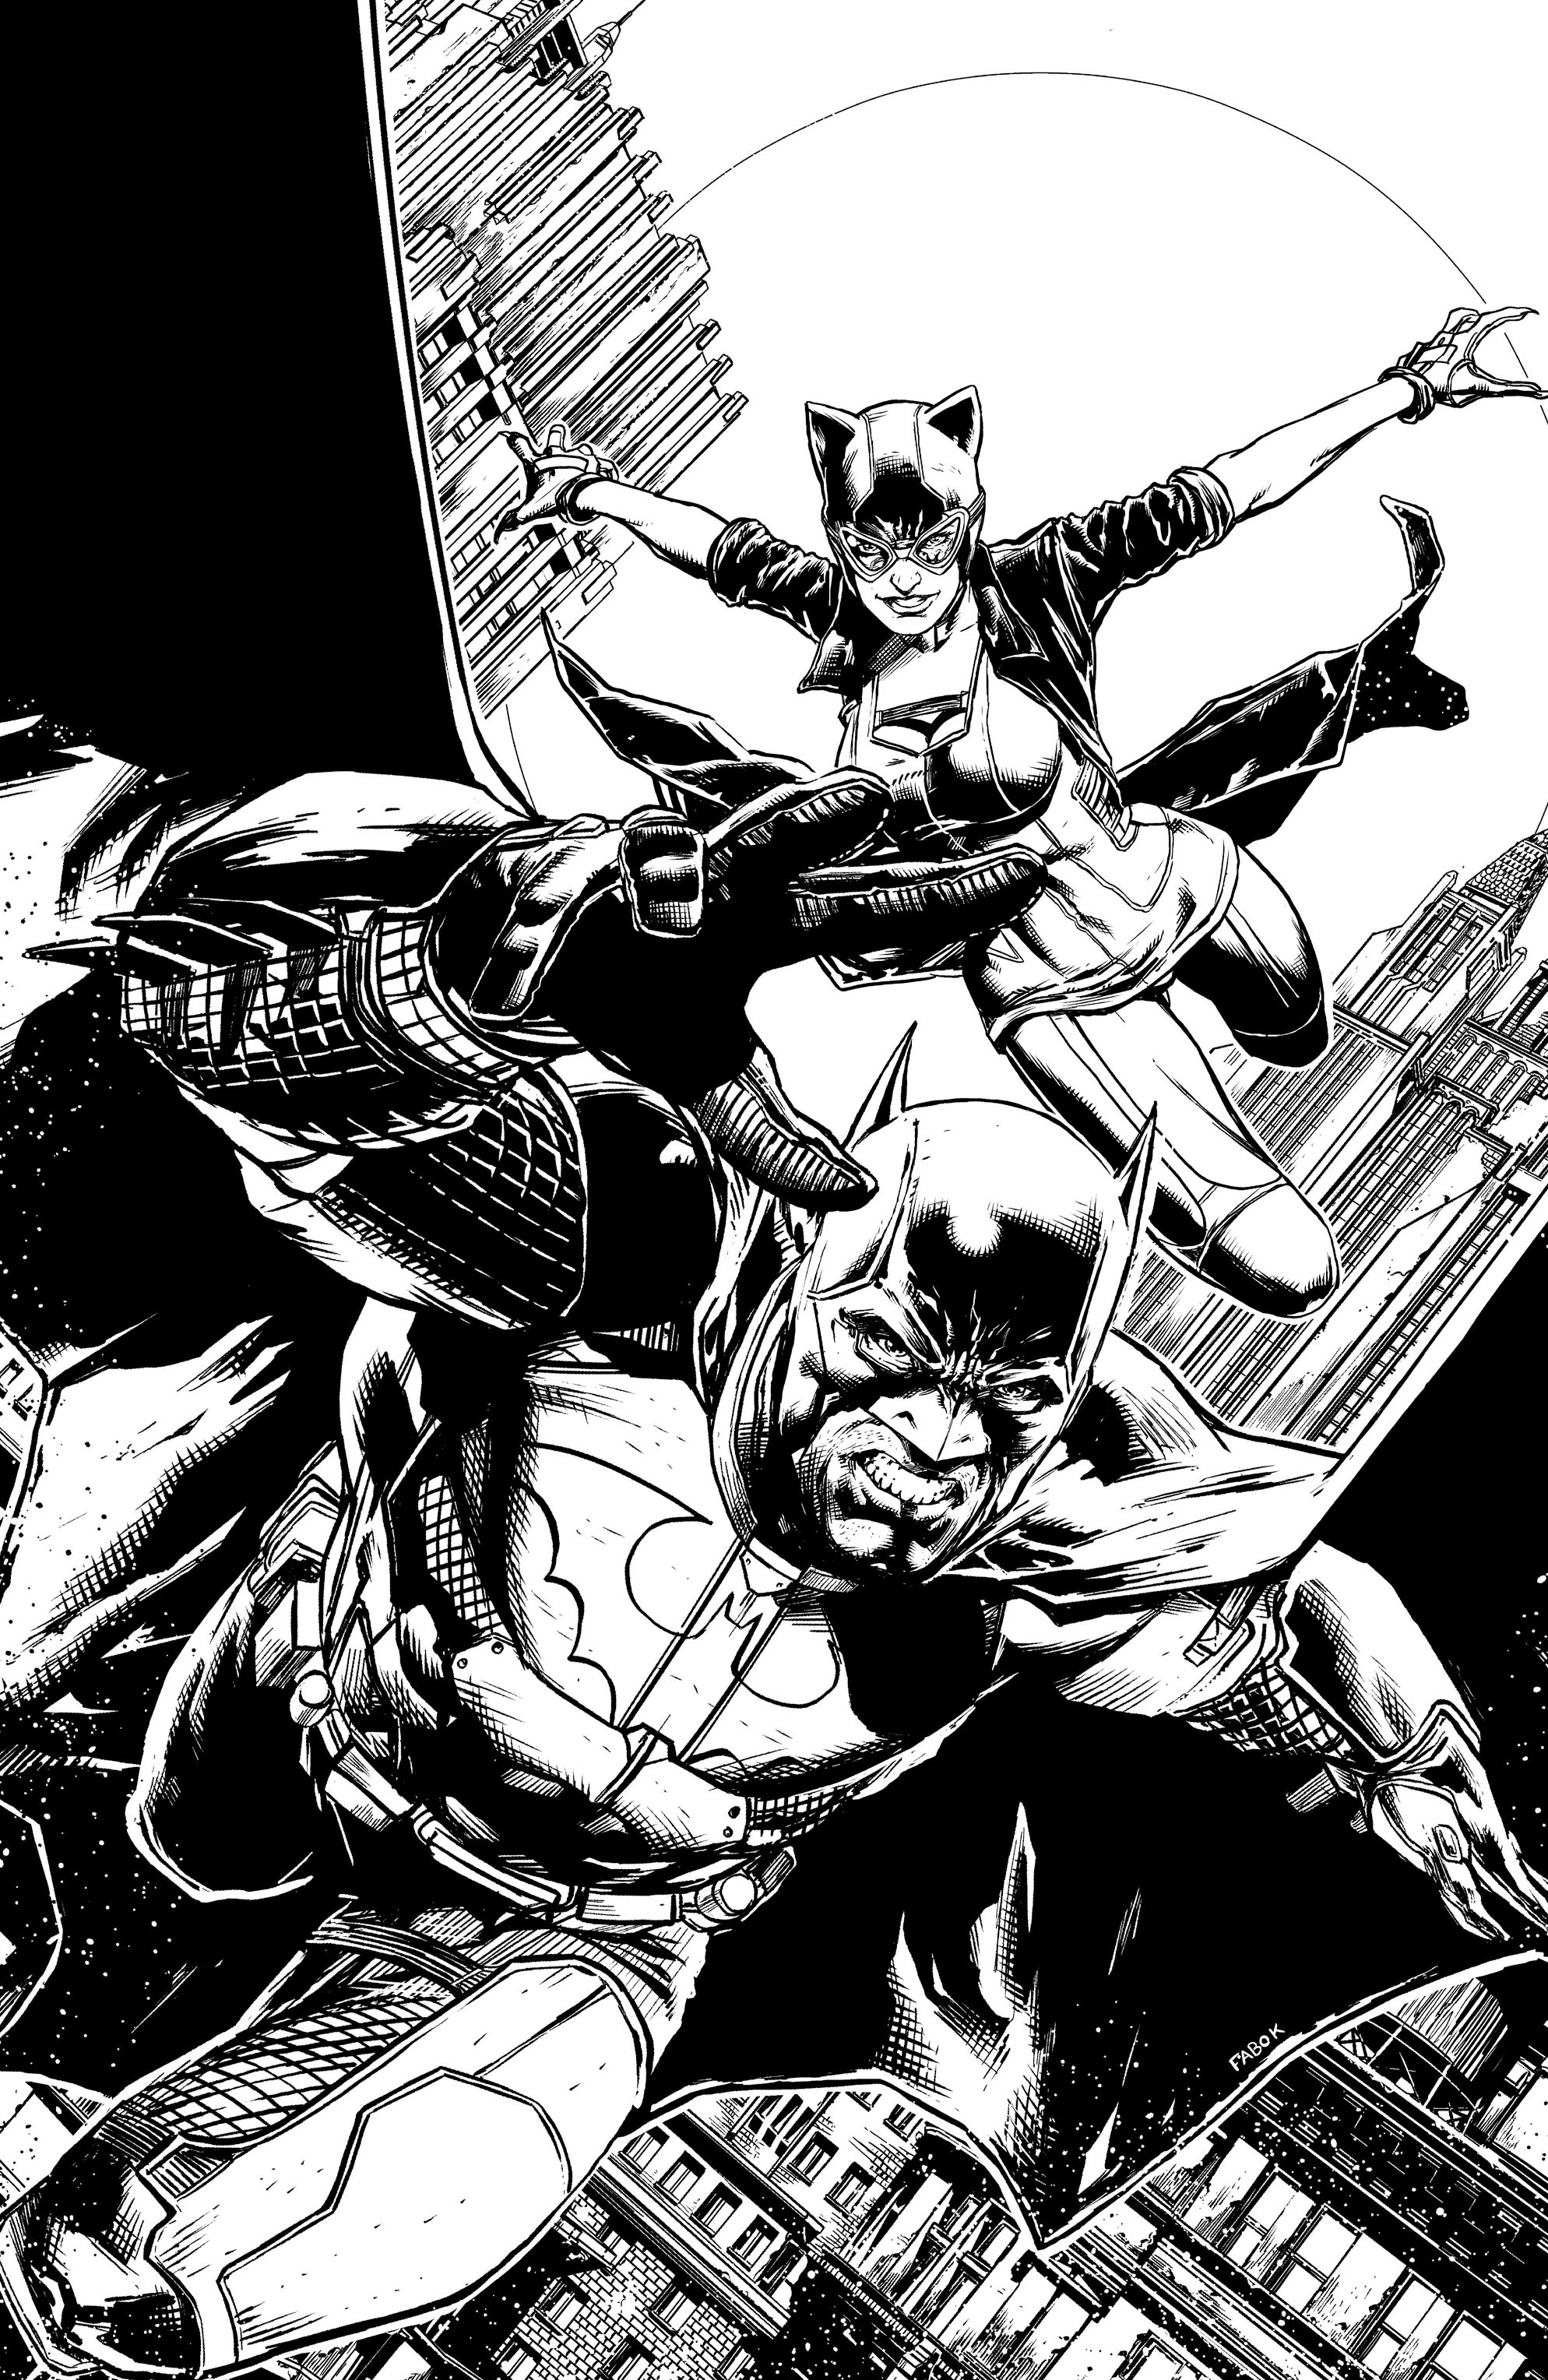 Read online Batman: Detective Comics comic -  Issue # TPB 5 - 87